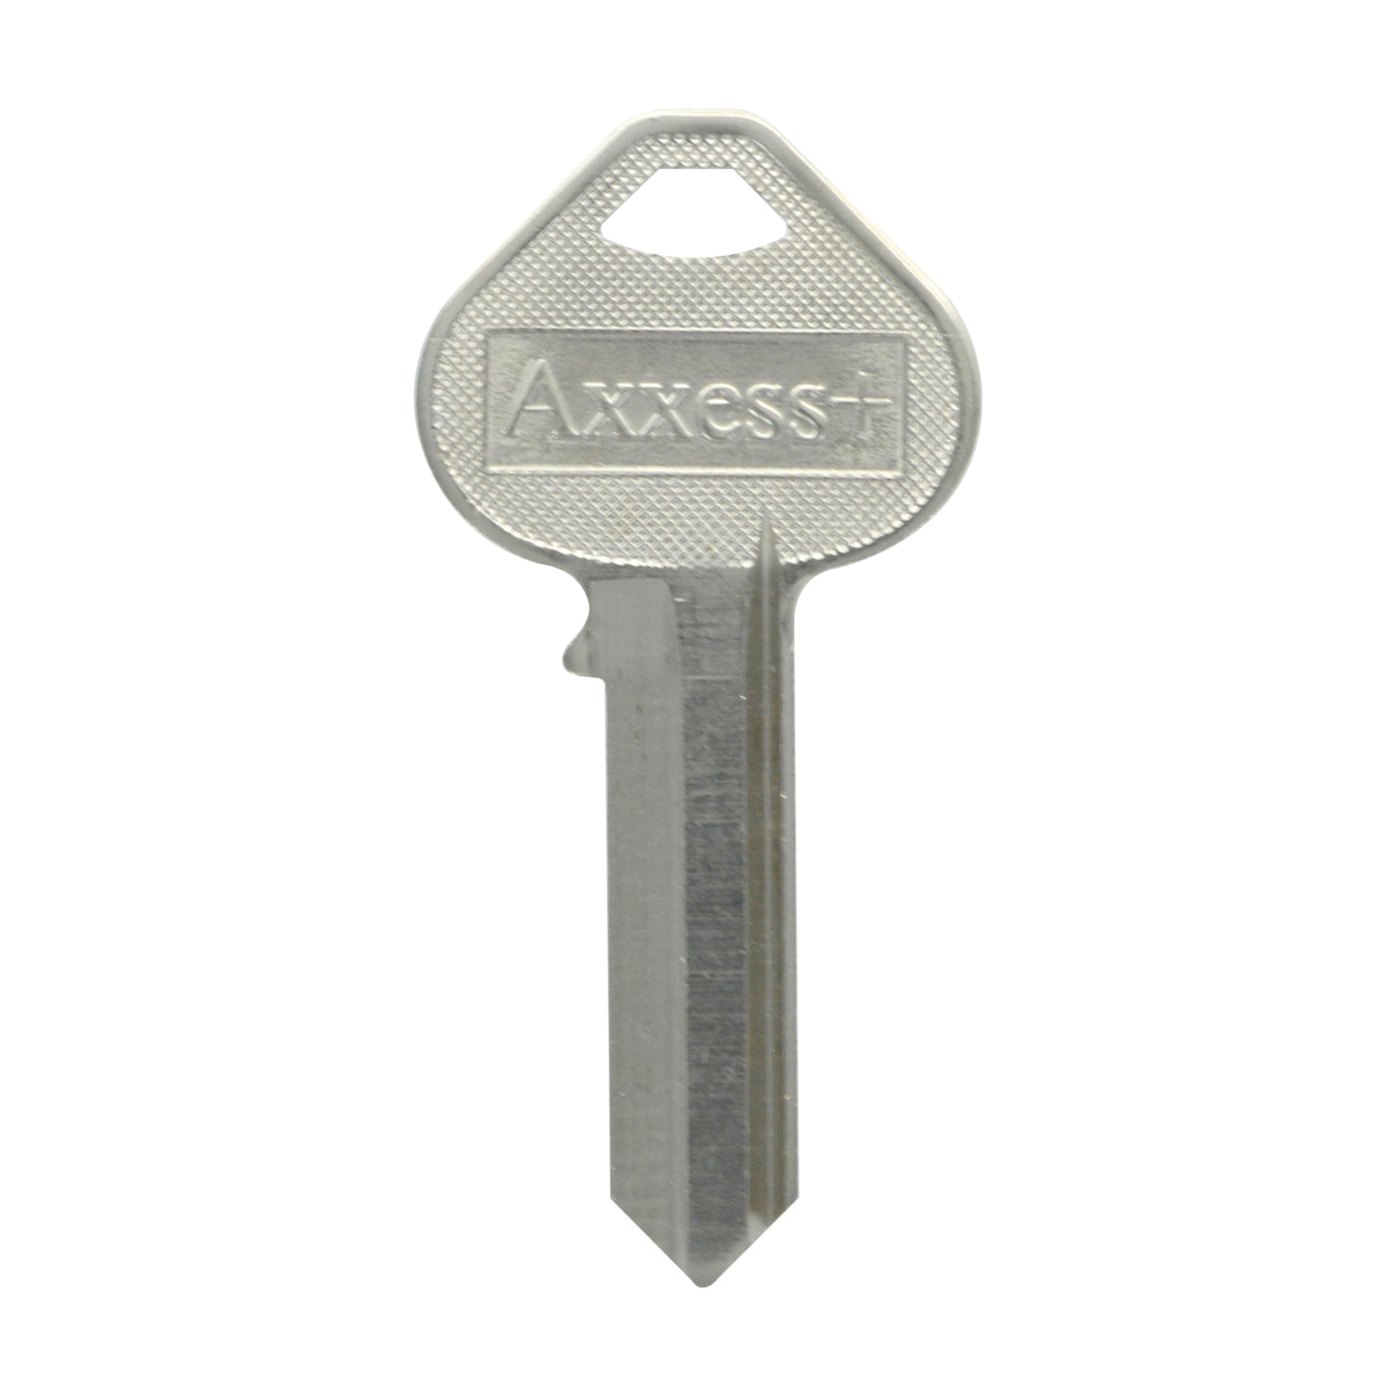 88075 Key Blank, Brass, Nickel-Plated, For: Corbin Russwin Locks